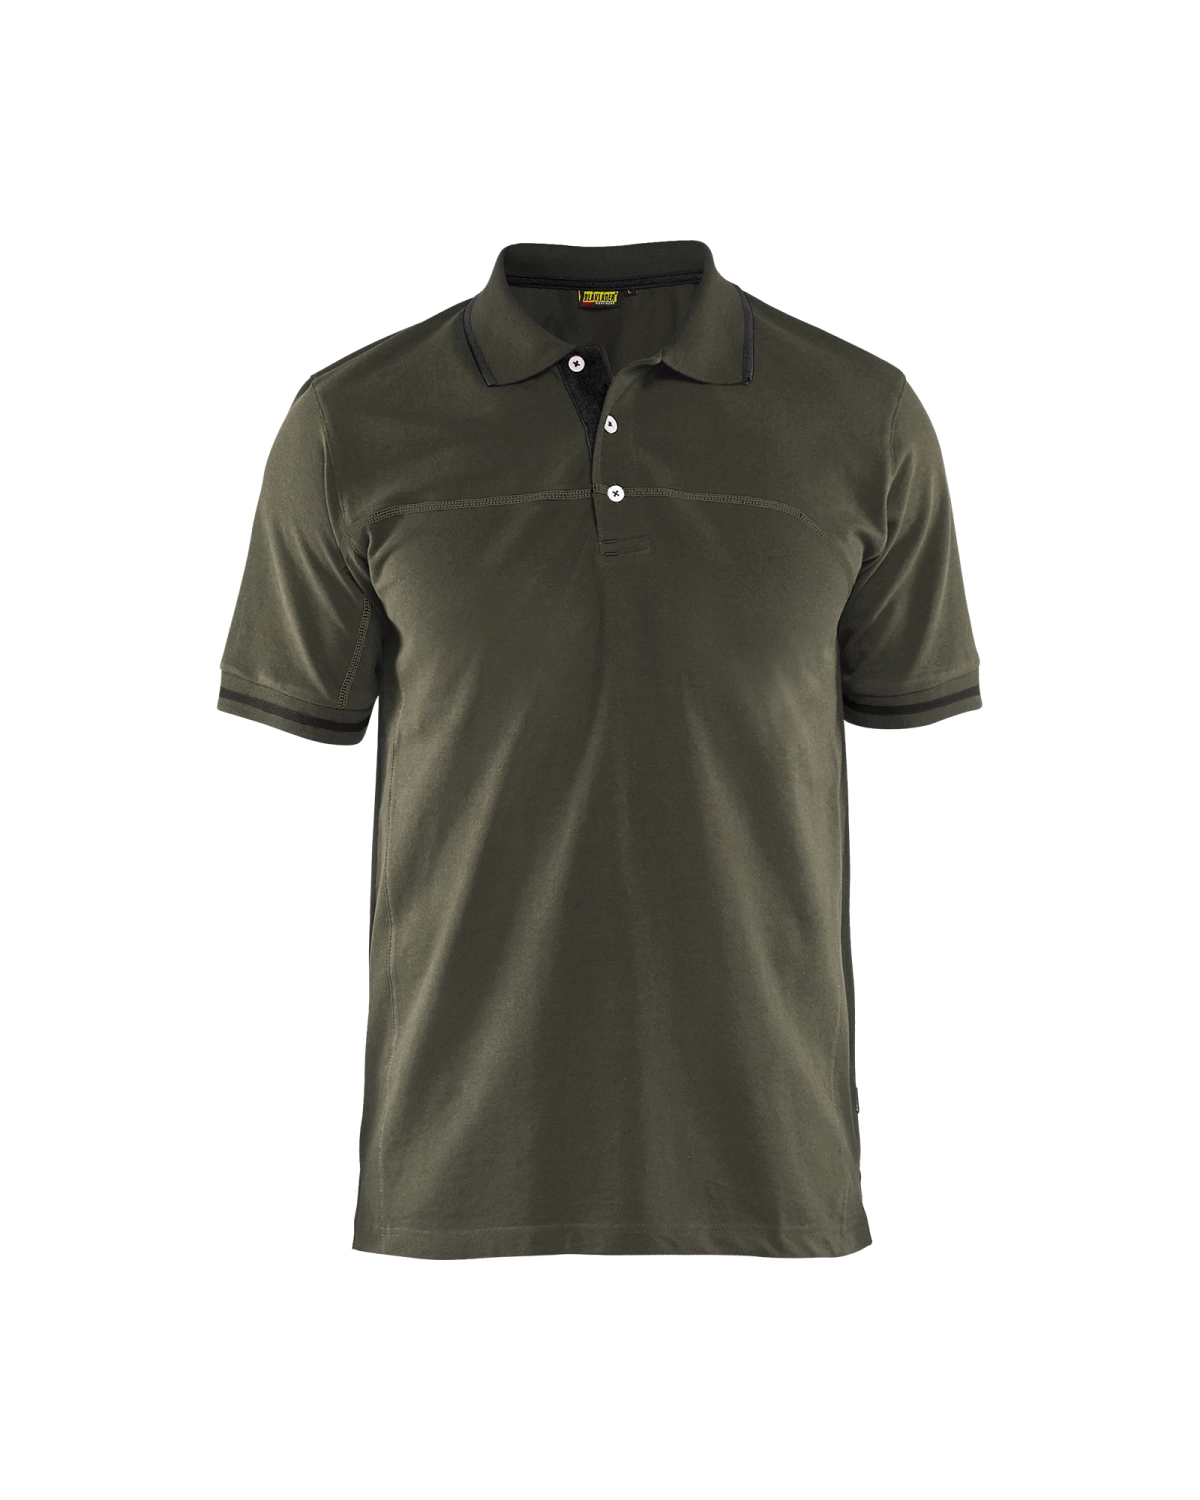 Blåkläder 3389 Poloshirt - groen/zwart - L